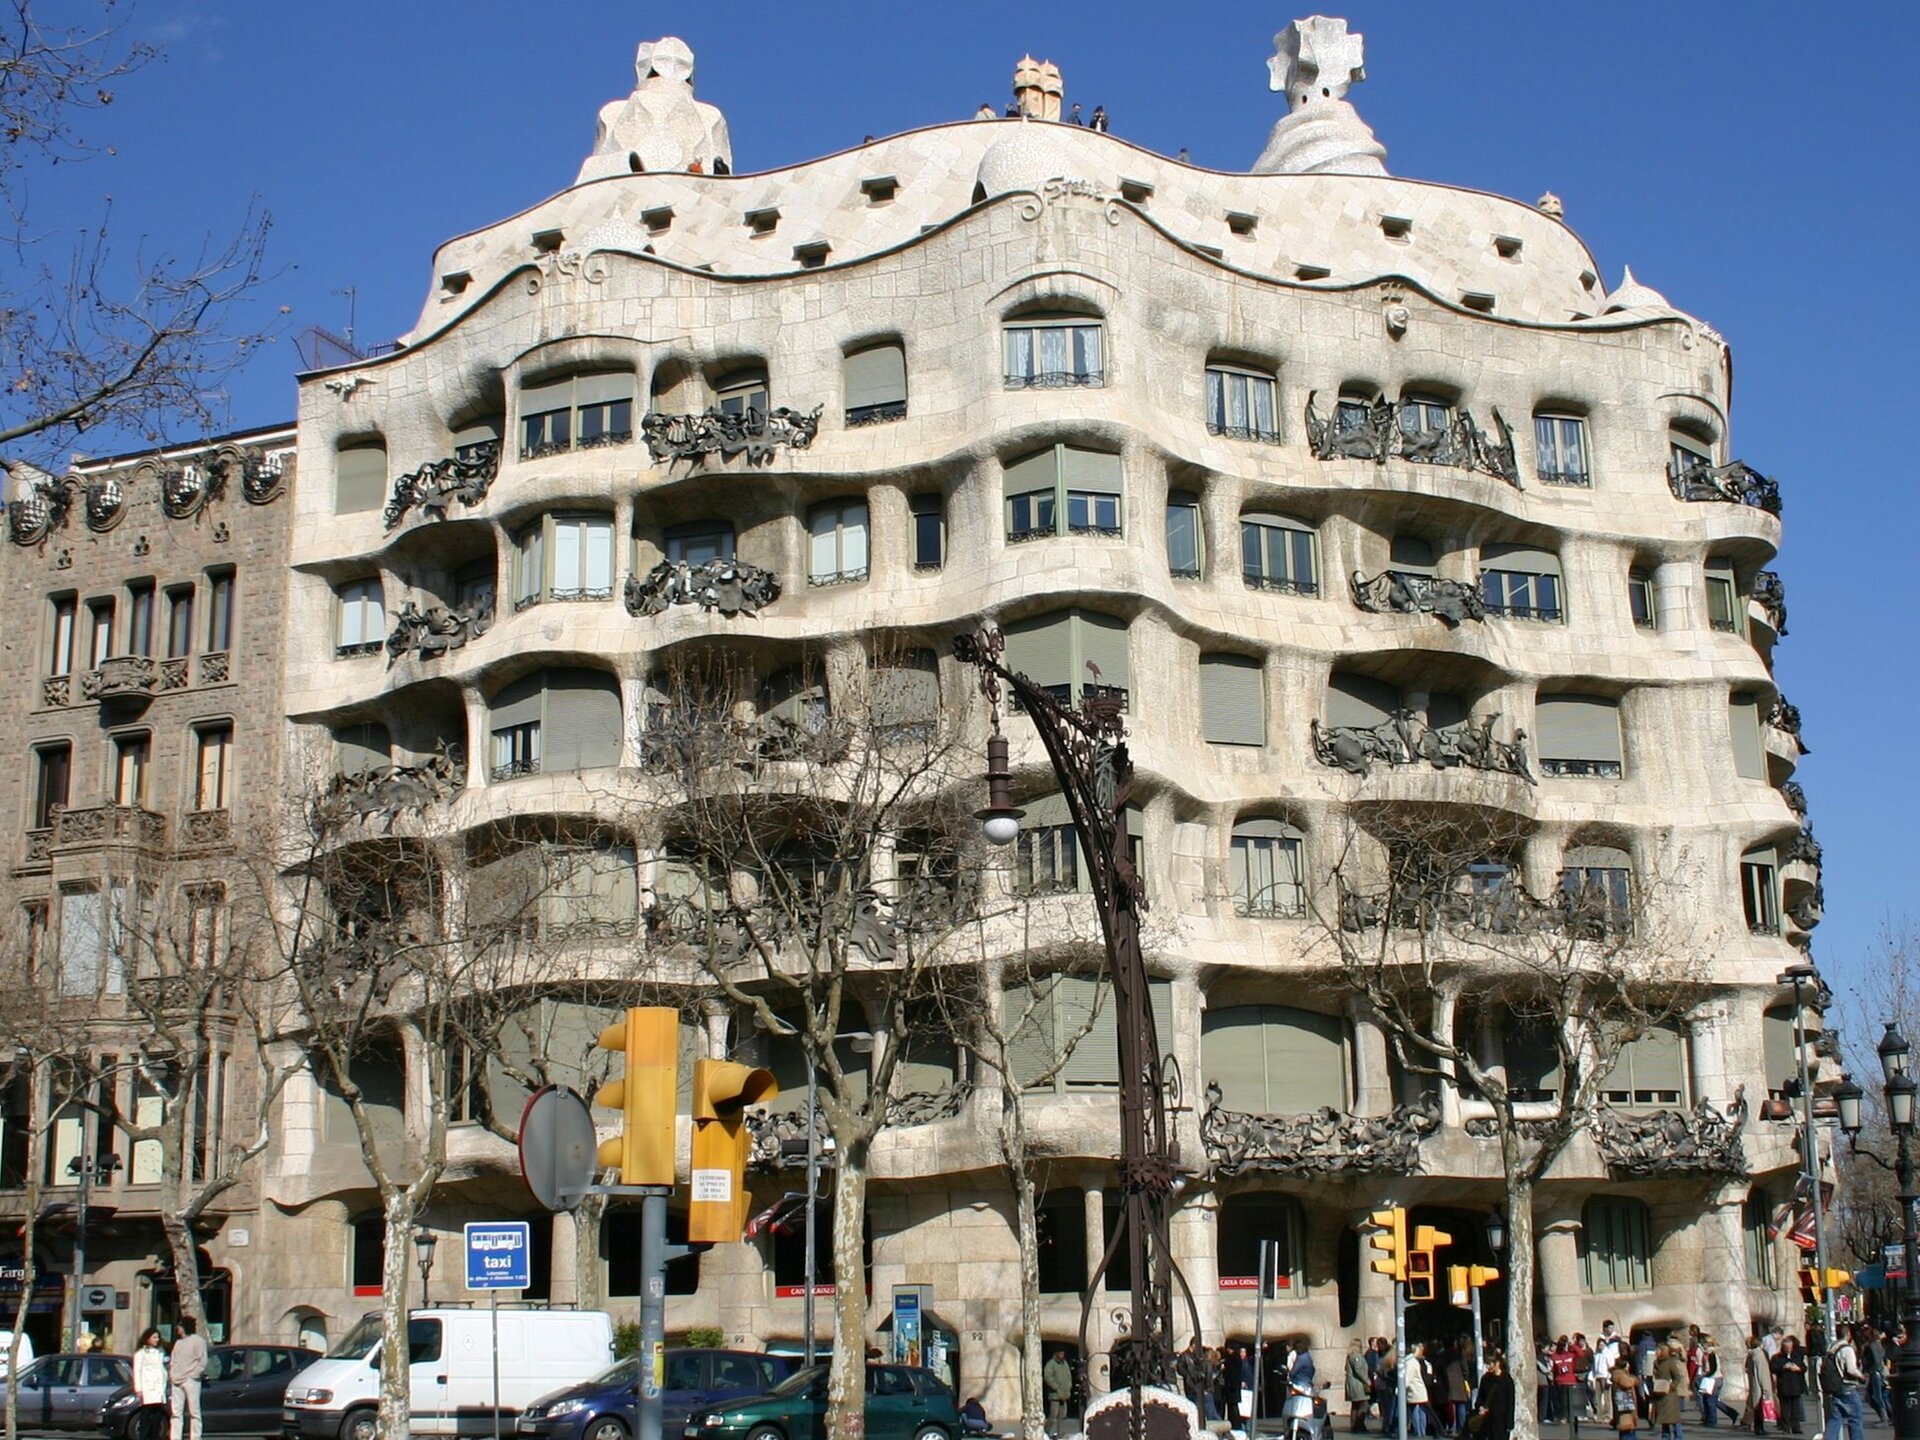 Ilustracja przedstawia budynek Casa Milà autorstwa Antonio Gaudi’ego. Fasada budynku przypomina wzburzone morze. Wygląda ciężko i monumentalnie choć wzniesiona jest z cienkich wapiennych płyt. Balkony zdobią kute z żelaza balustrady przybierające kształt dzikich chaszczy. Na elewacji budynku widnieje oryginalne zdobienie.